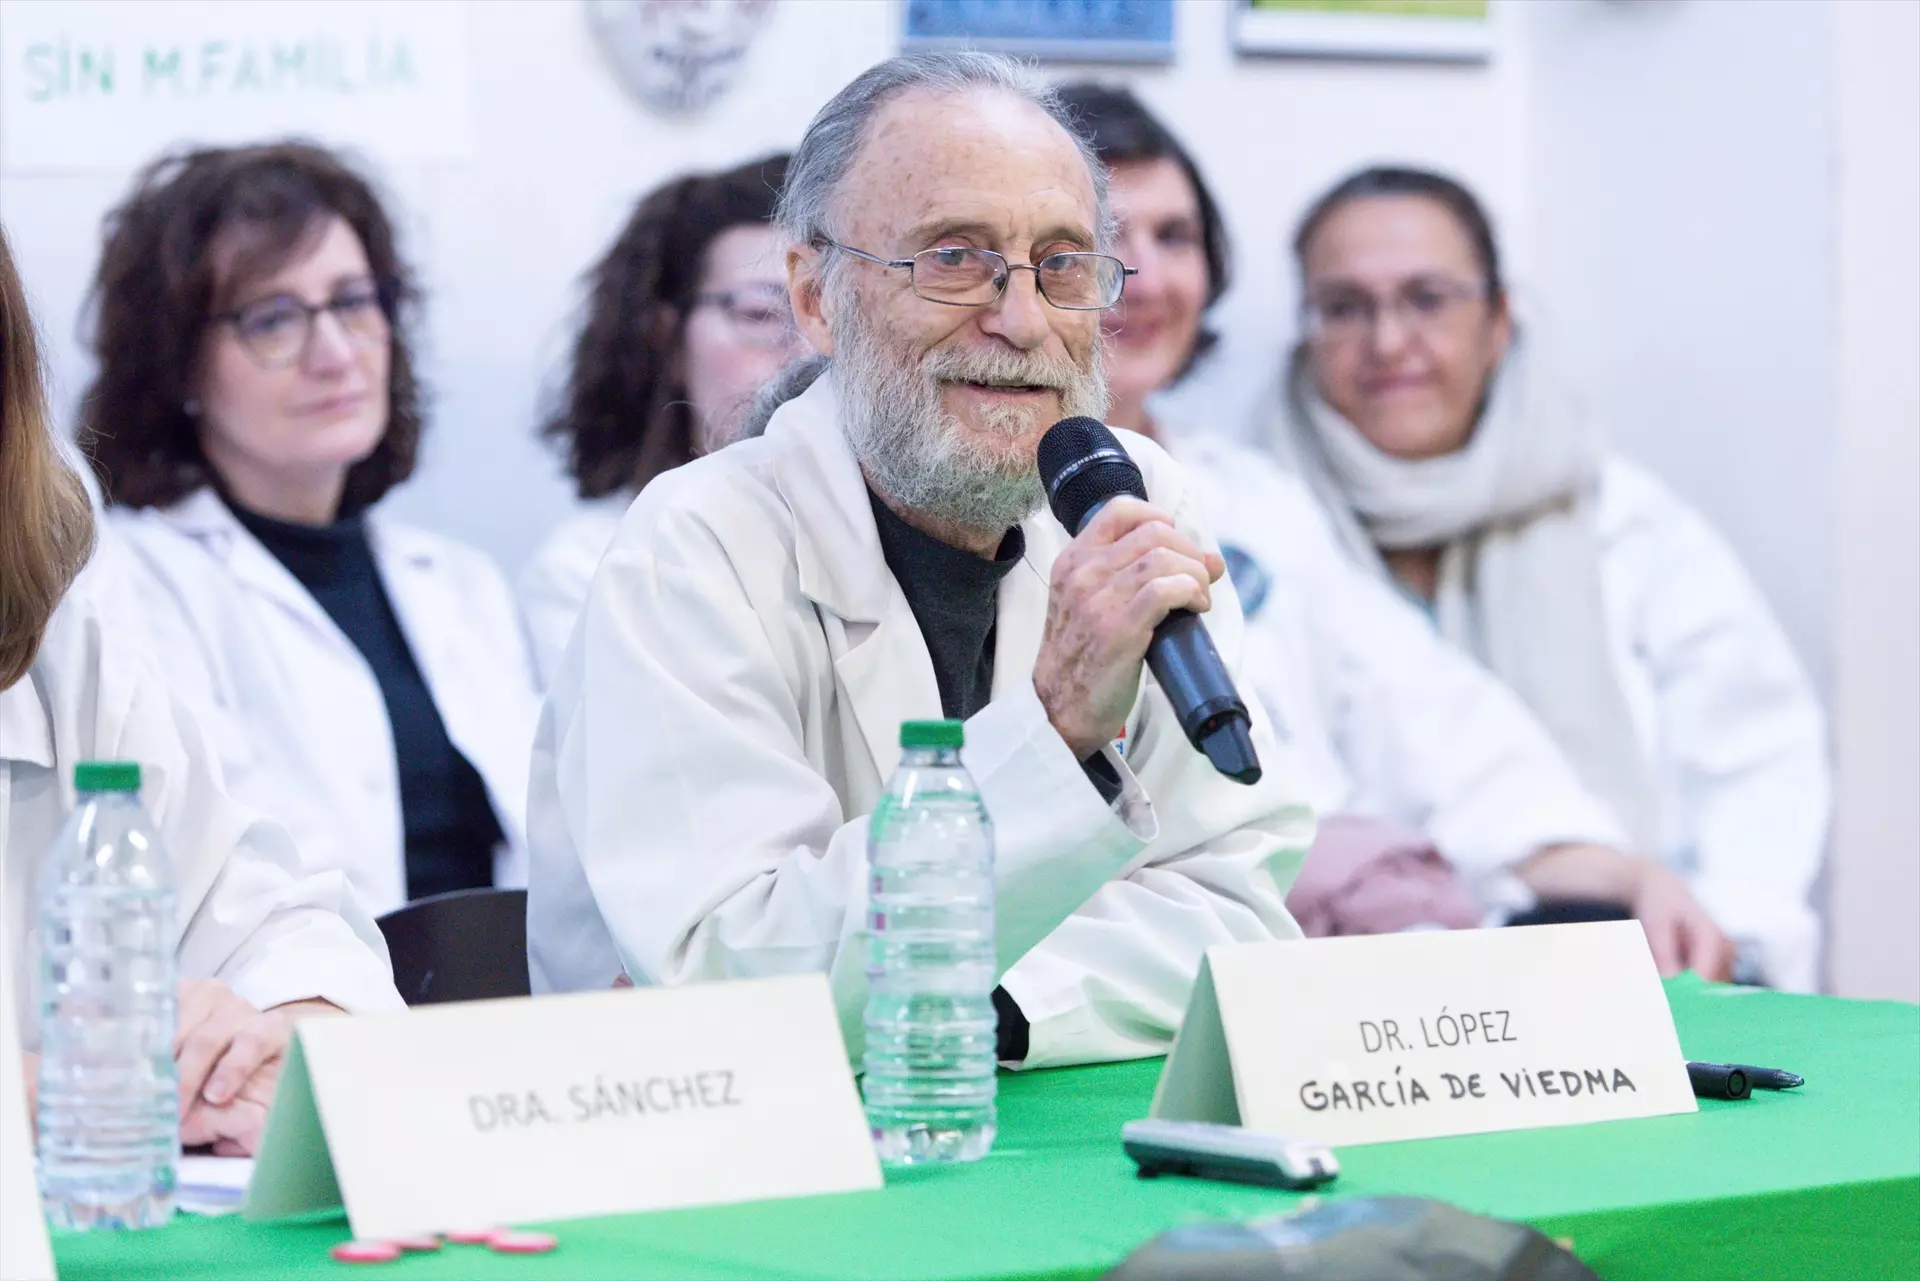 Un doctor de atención primaria jubilado se niega a asistir a un homenaje organizado por la Comunidad de Madrid